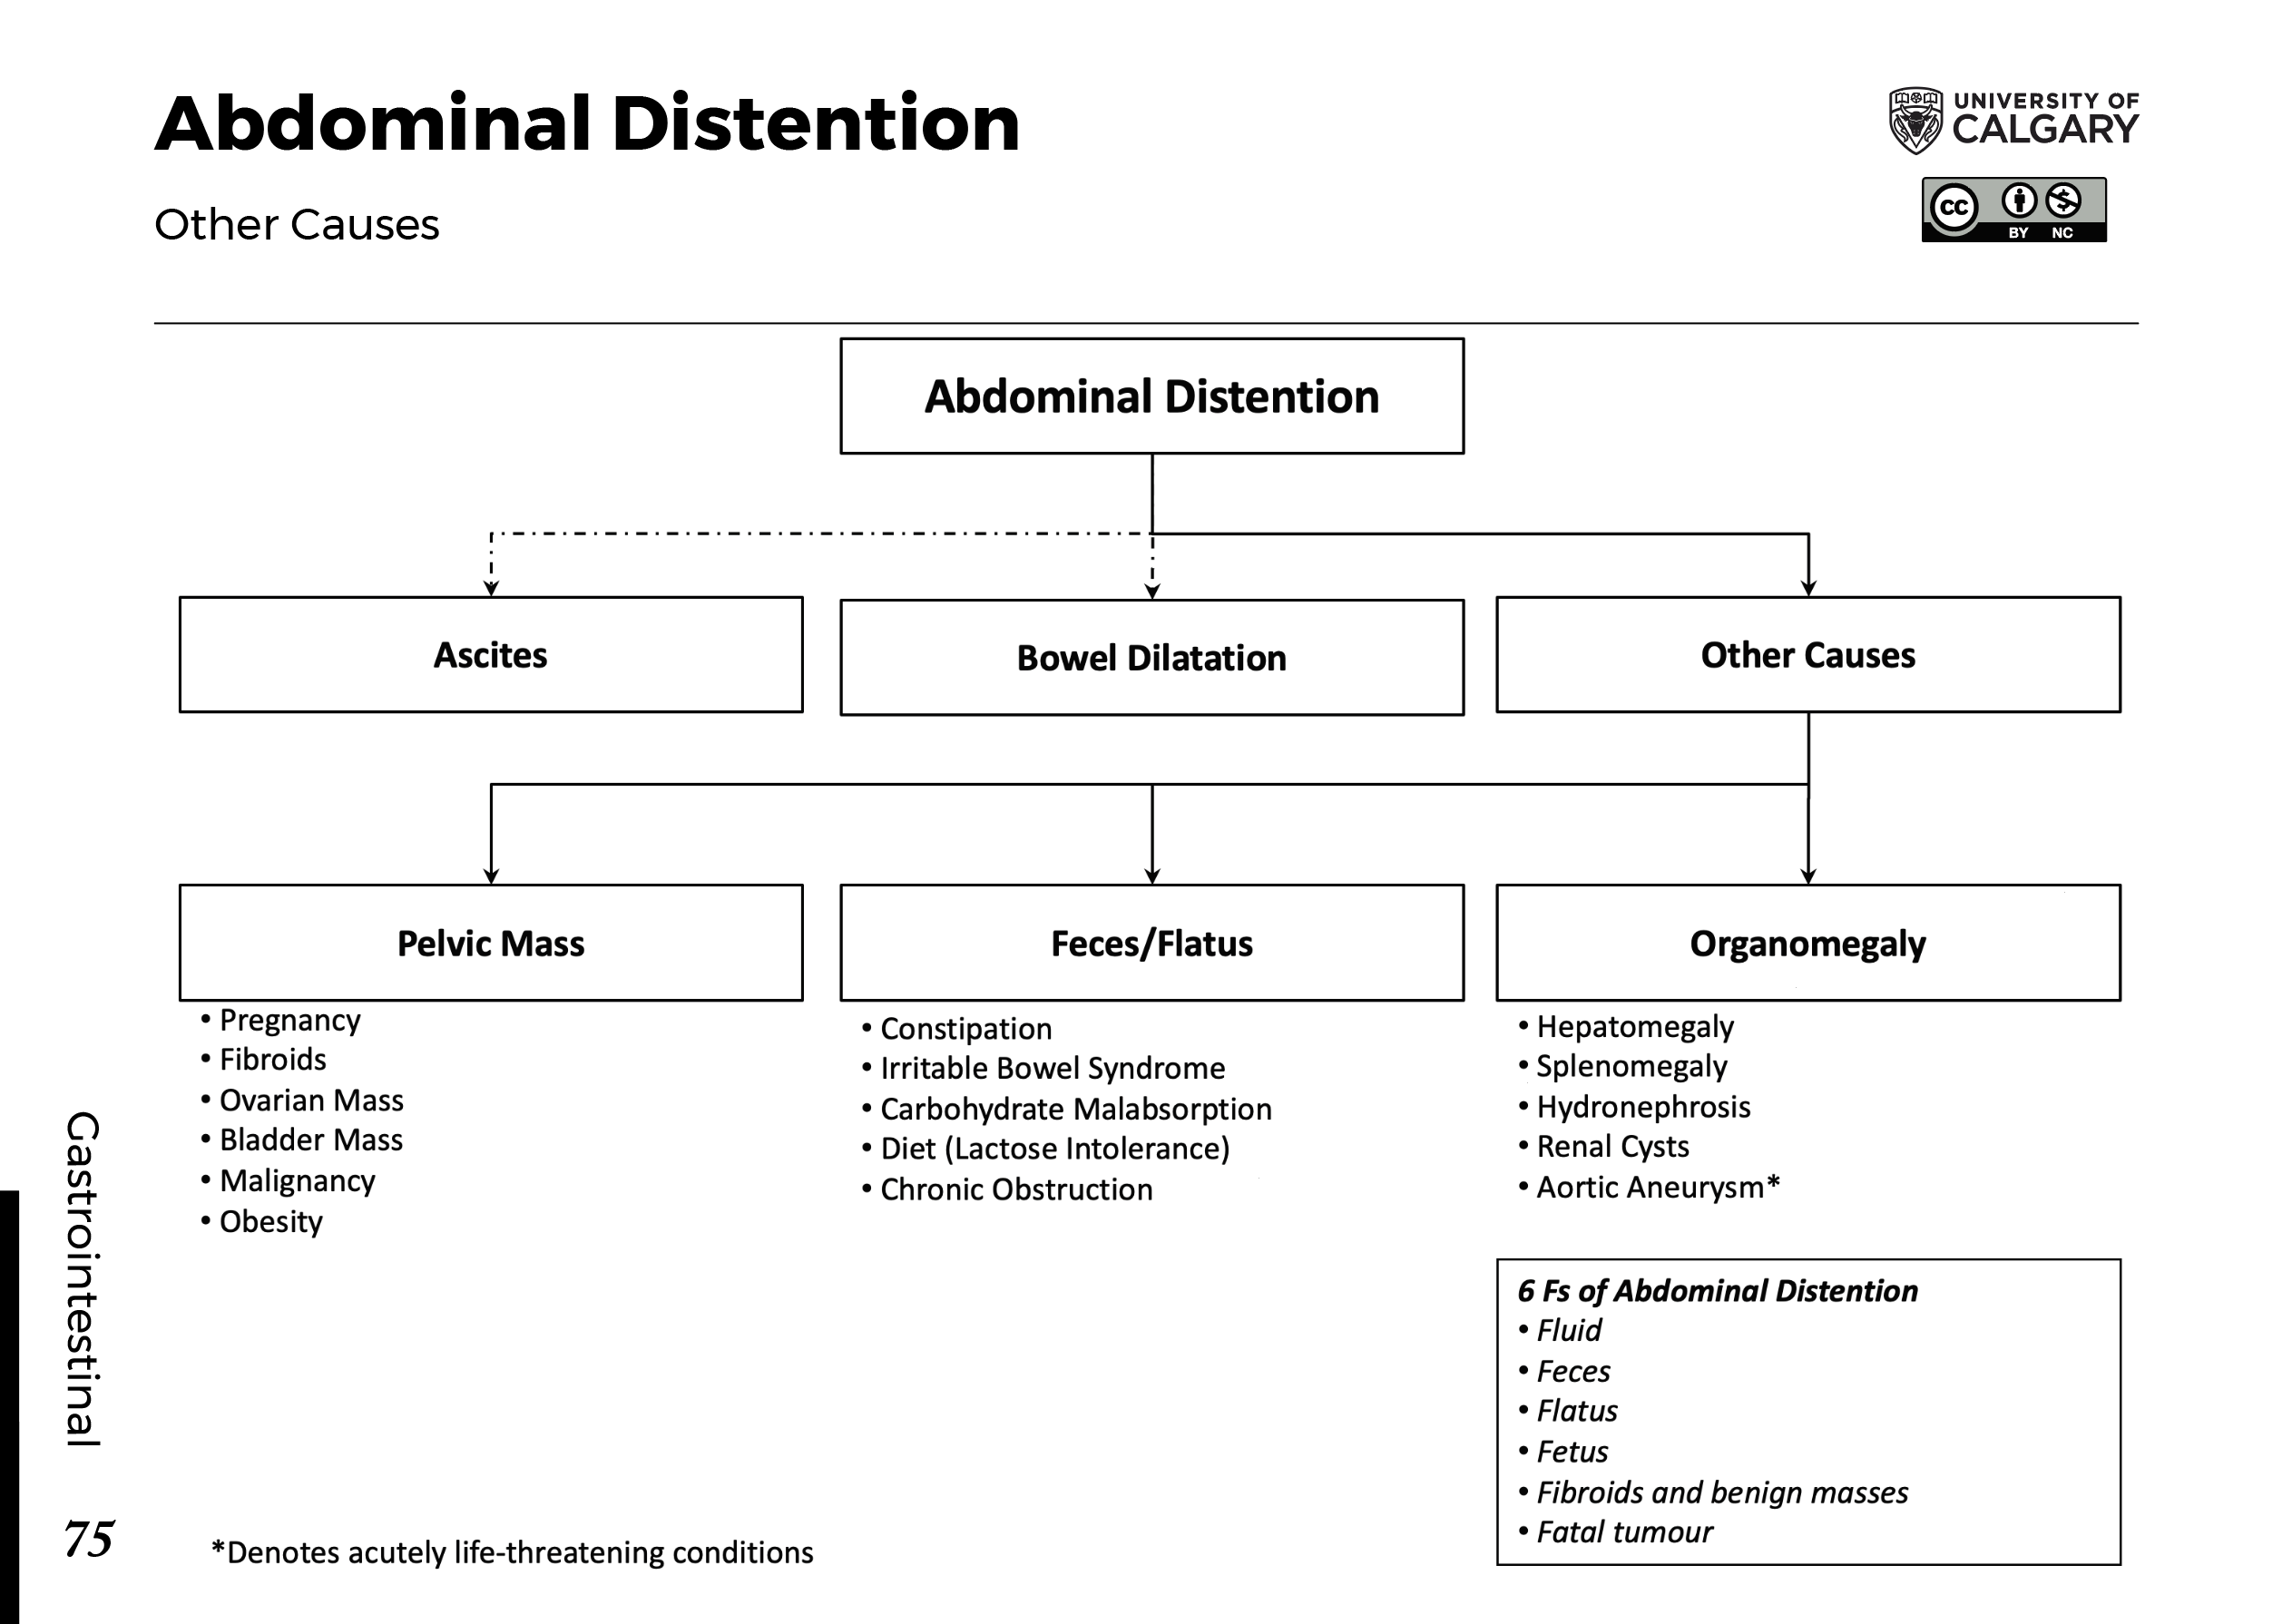 ABDOMINAL DISTENTION: Other Causes Scheme